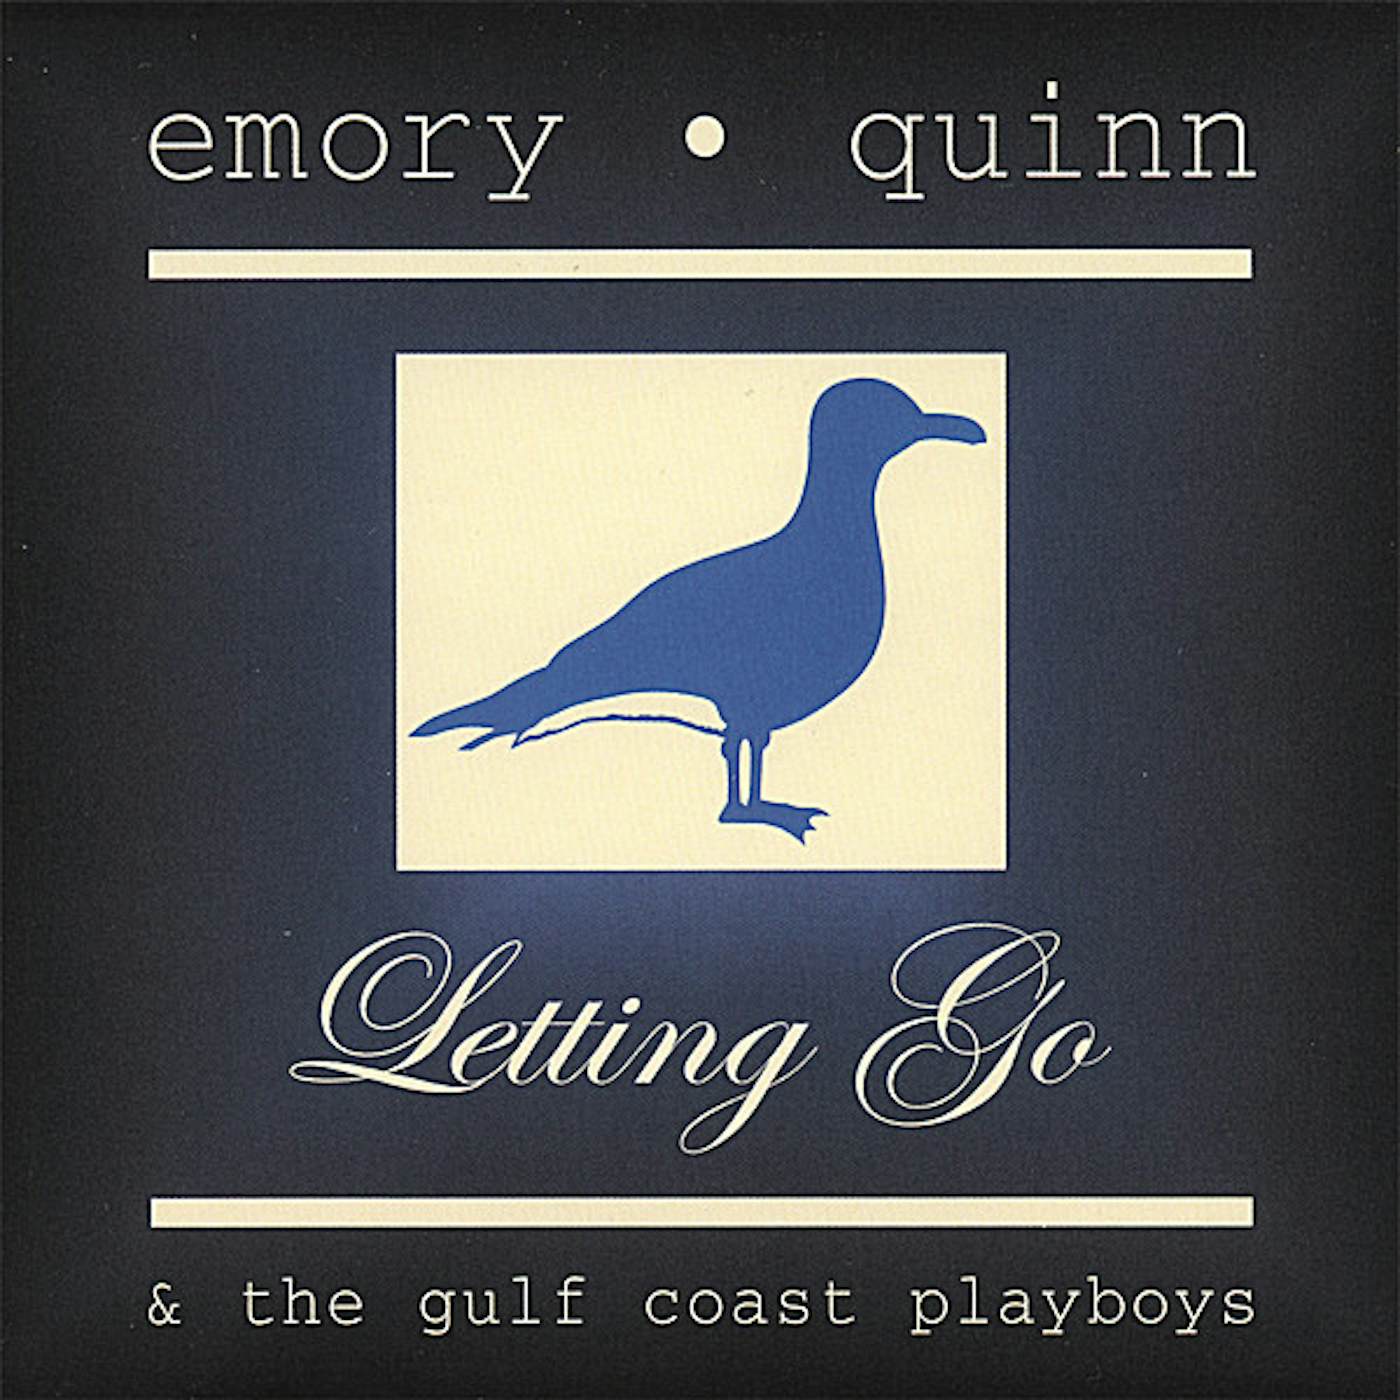 Emory Quinn LETTING GO CD